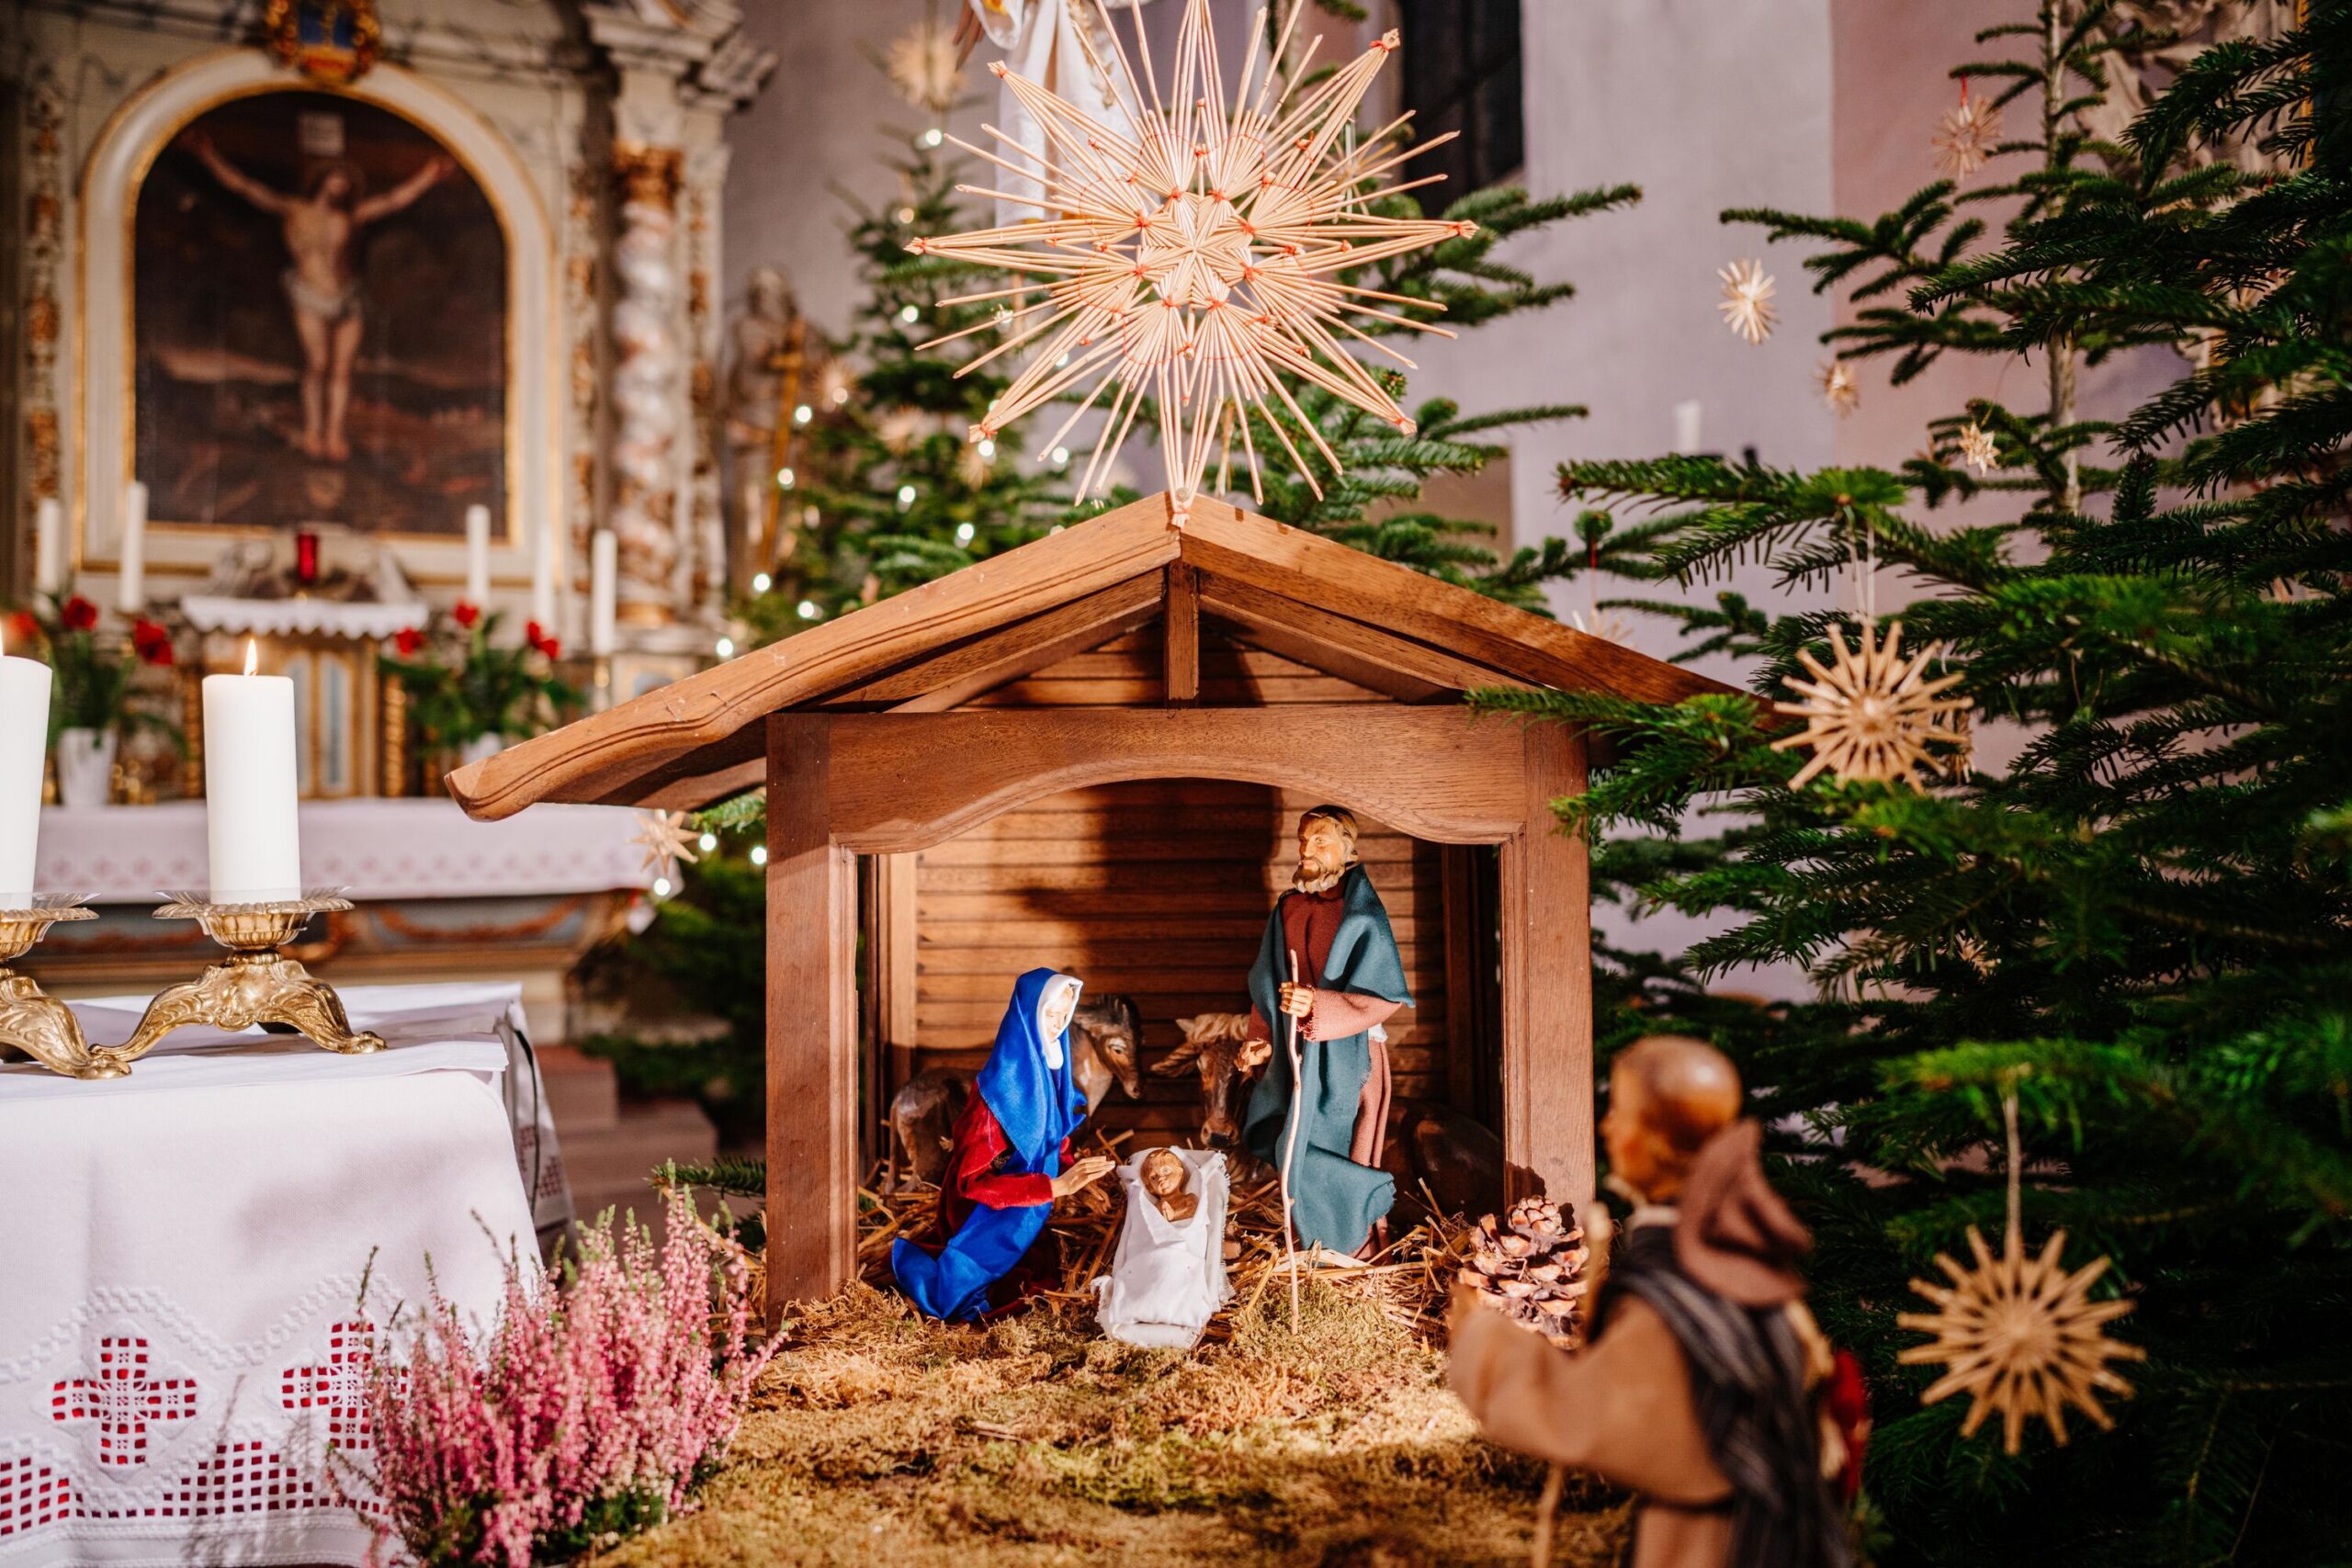 An Weihnachten feiern wir die Geburt Jesu